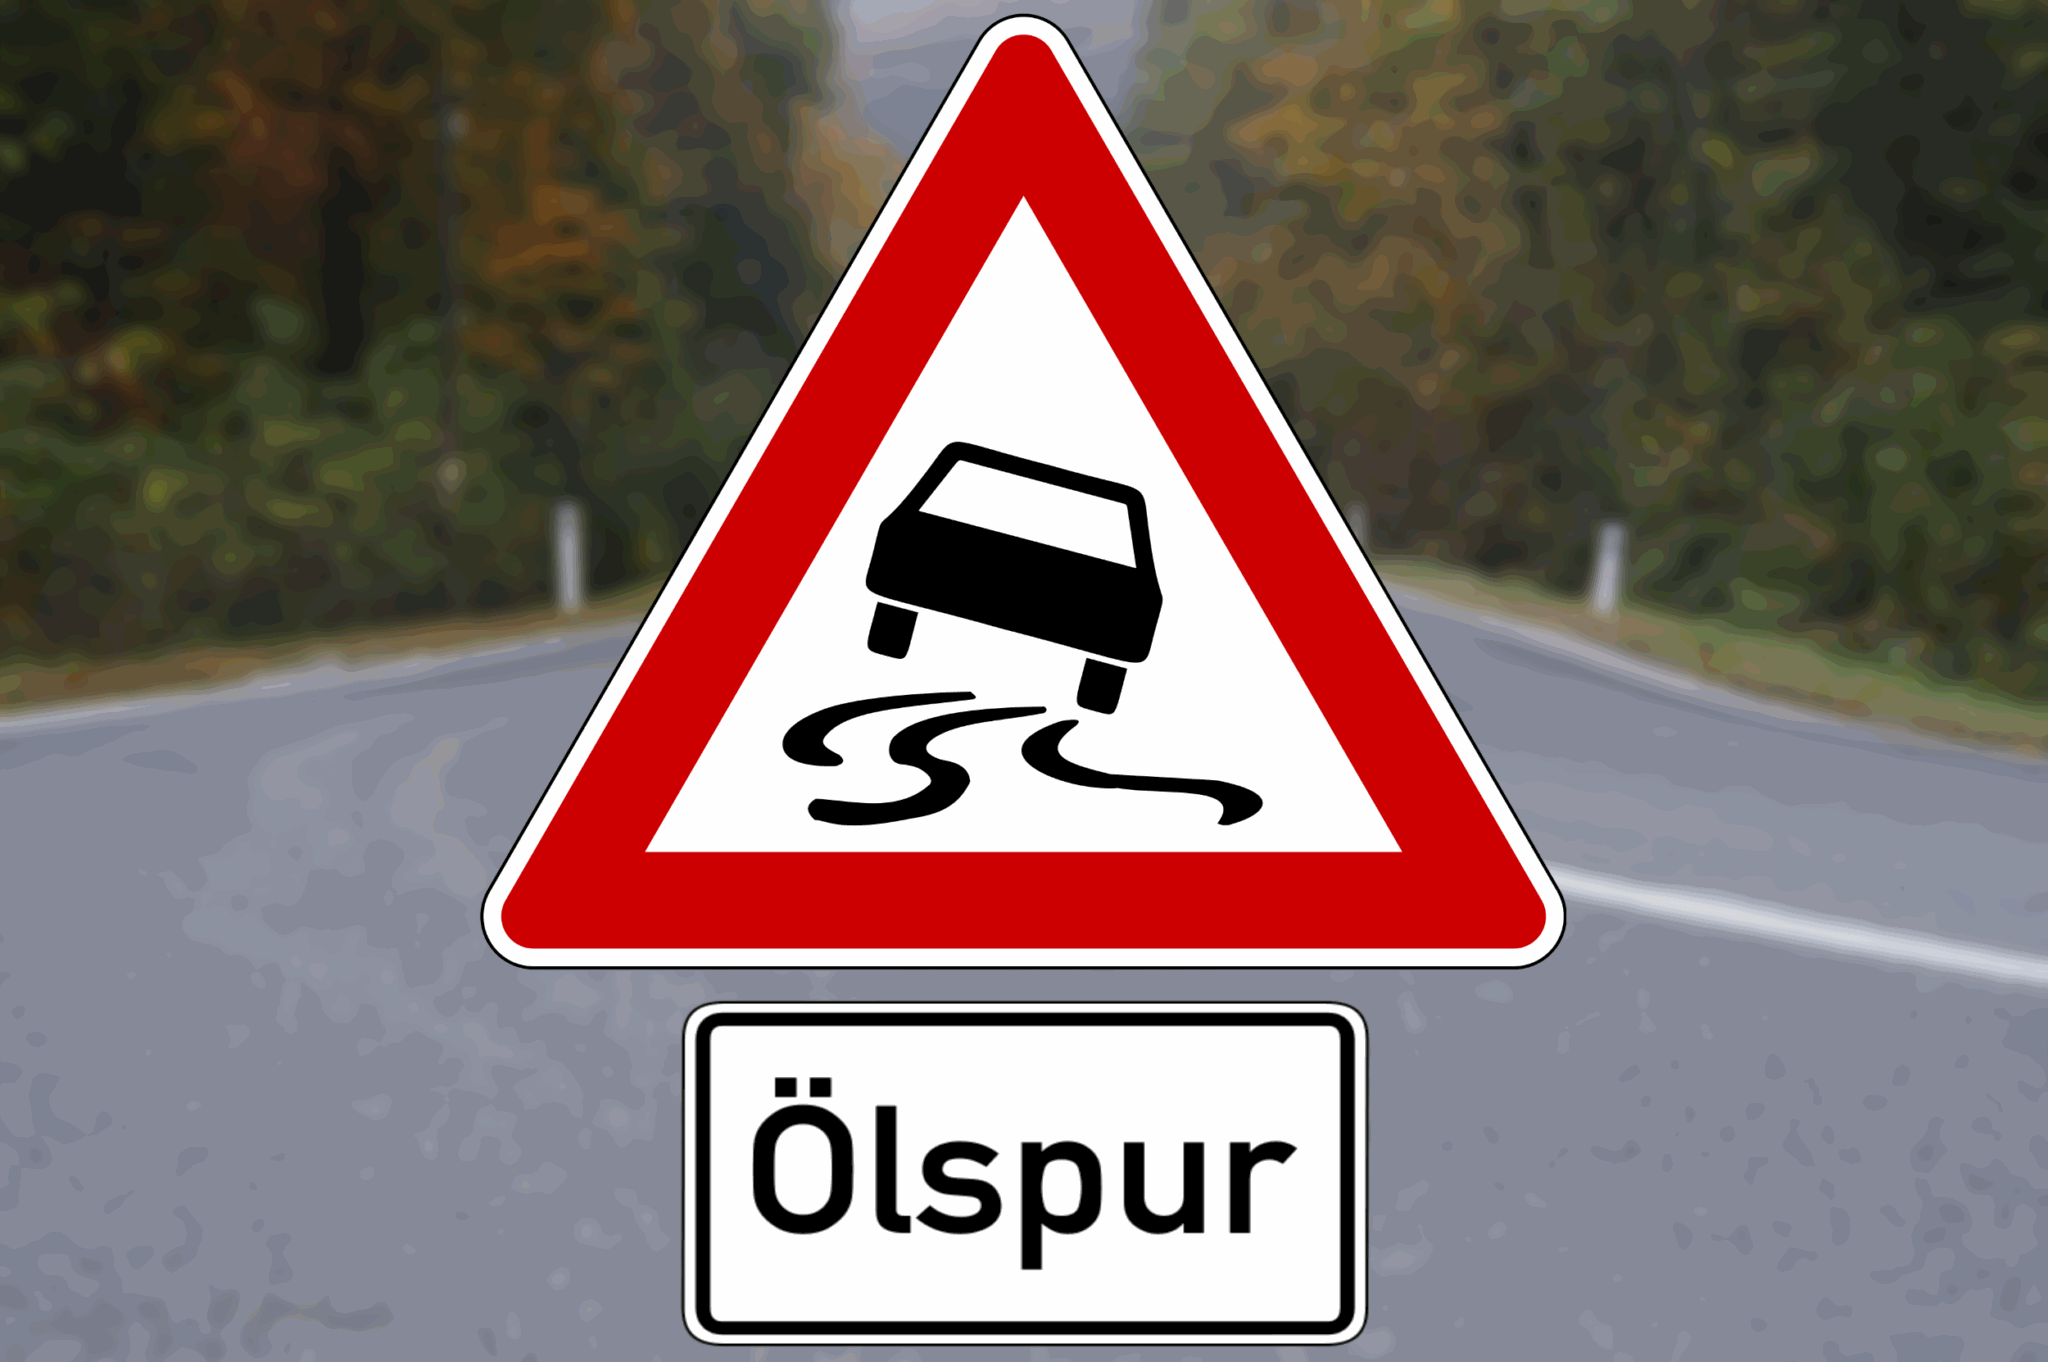 einsatz-oelspur-traffic-sign-6611-wide-hintergrund